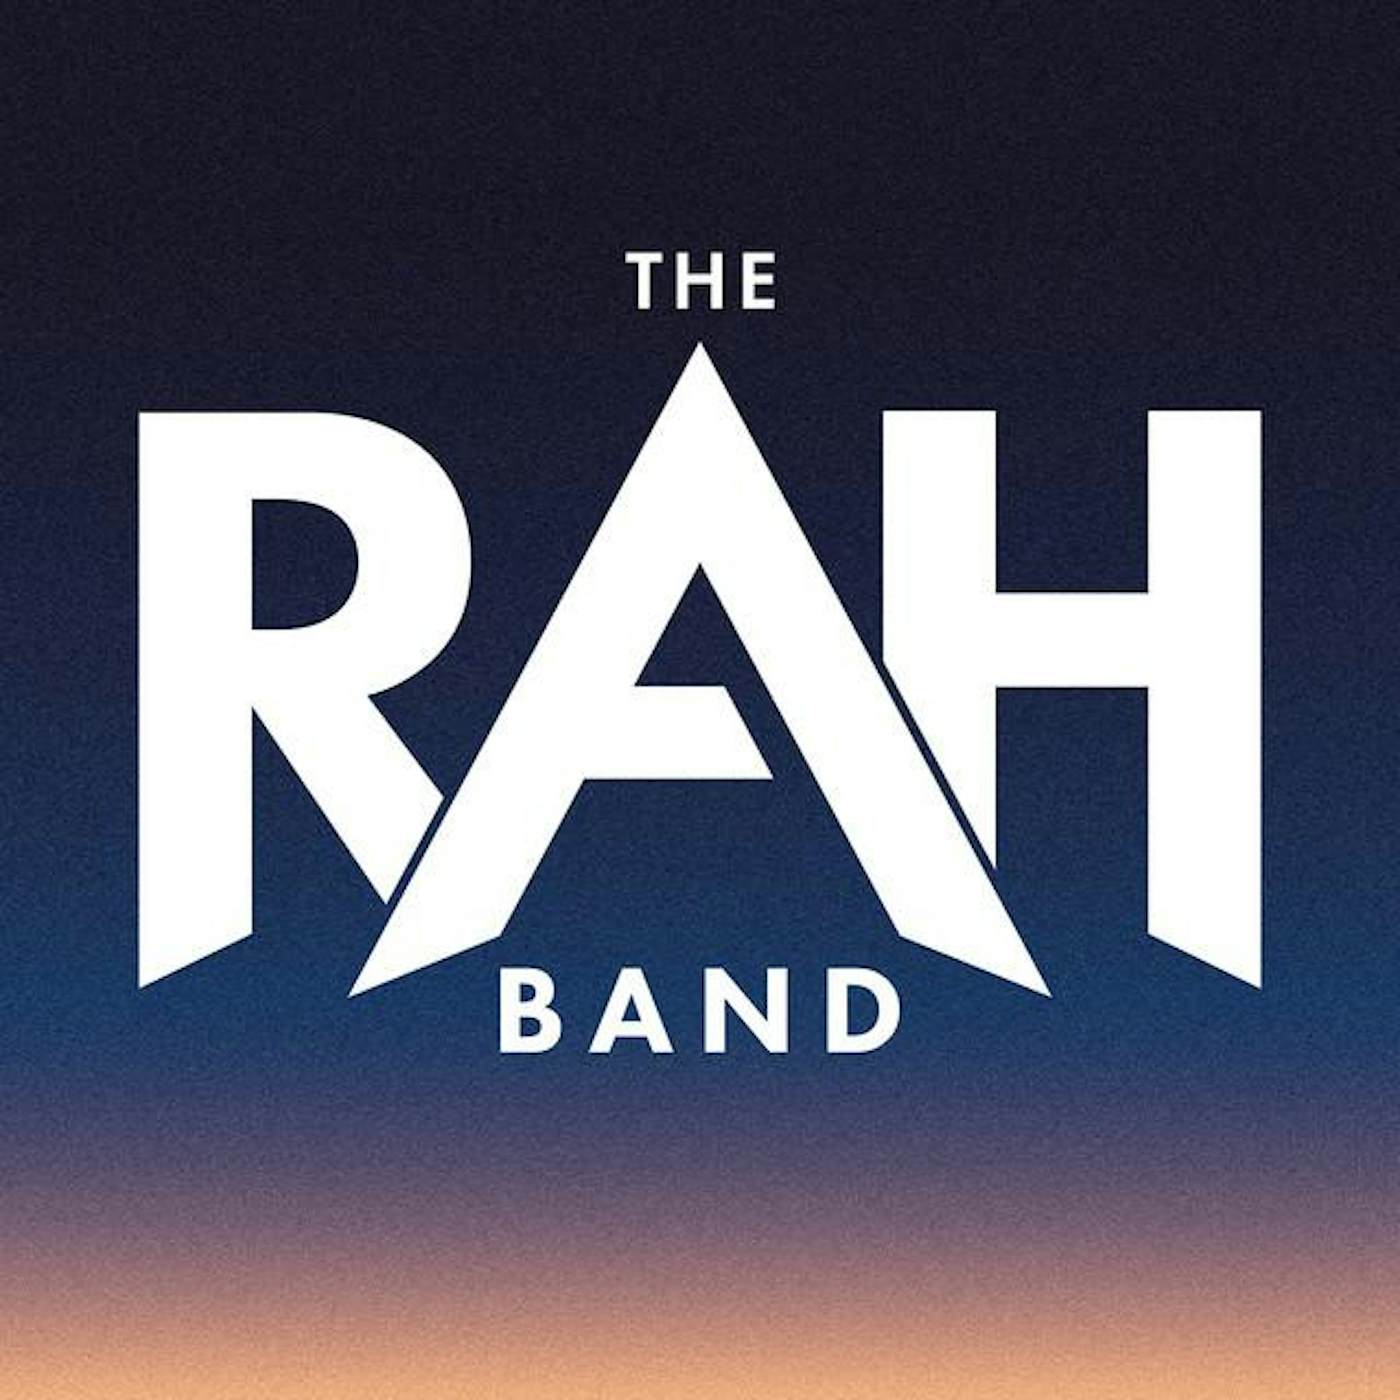 Message band. The Rah Band. The Rah Band участники. The Rah Band солистка. The Rah Band Falcon.